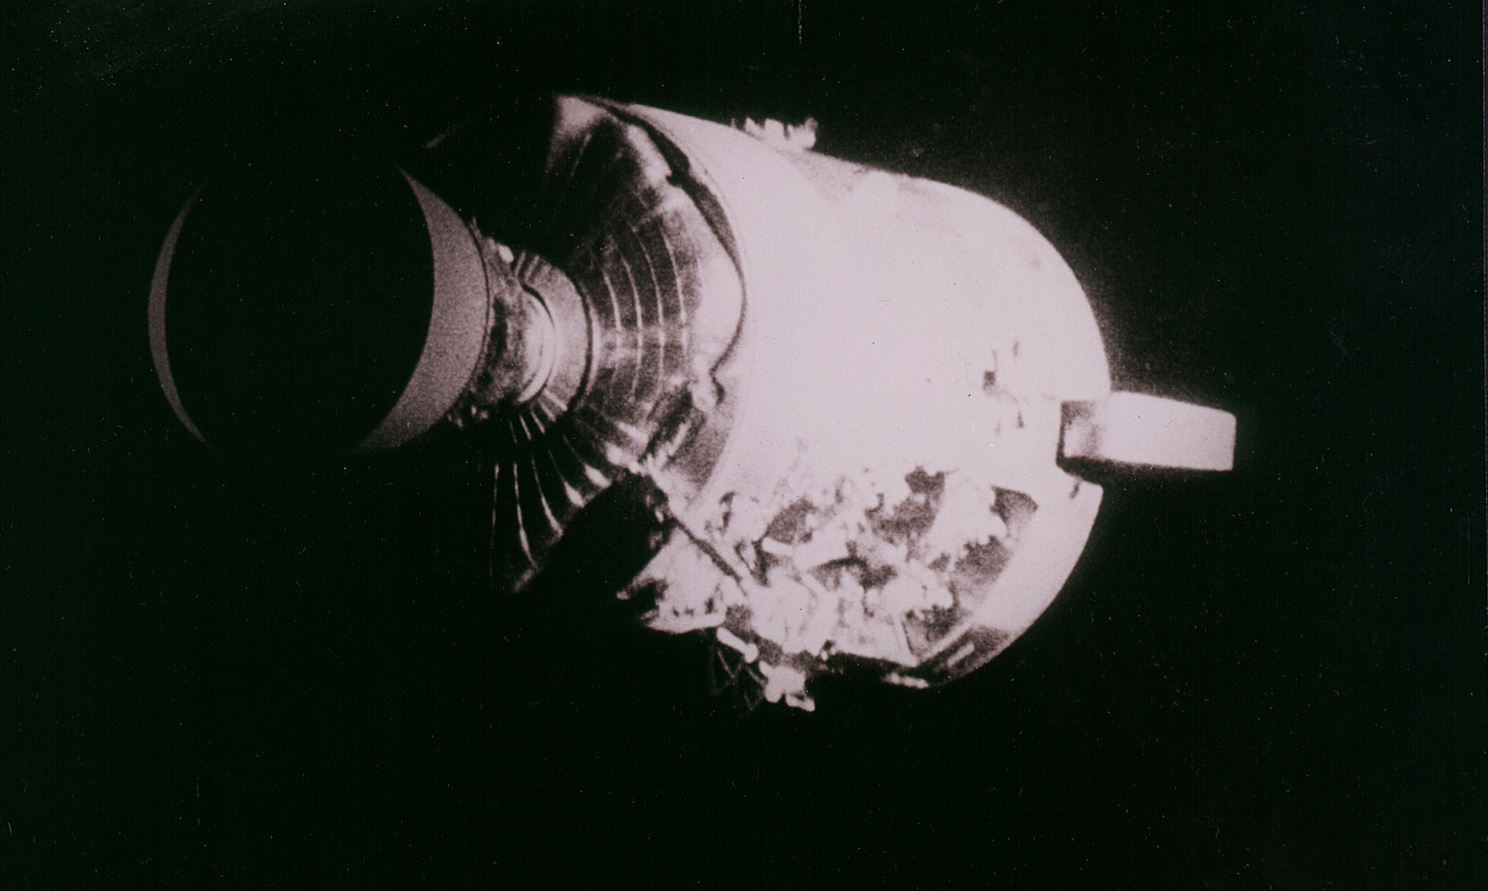 Revivez l'aventure Apollo 13 en temps réel, presque cinquante ans plus tard